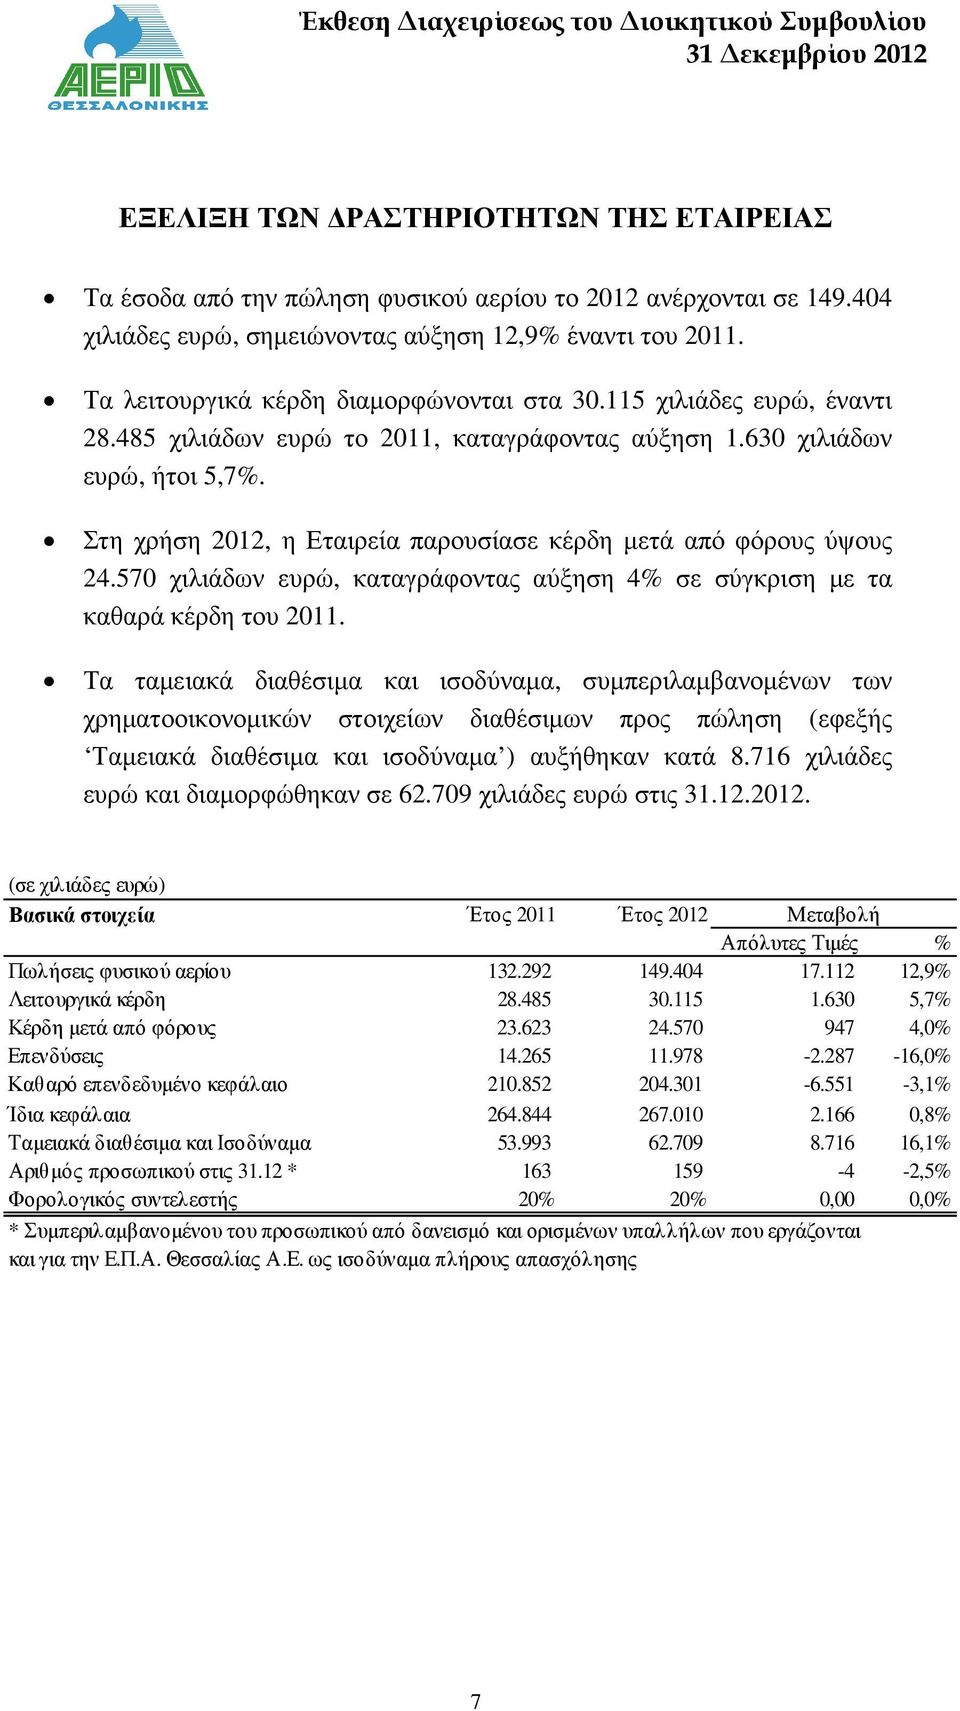 Στη χρήση 2012, η Εταιρεία παρουσίασε κέρδη µετά από φόρους ύψους 24.570 χιλιάδων ευρώ, καταγράφοντας αύξηση 4% σε σύγκριση µε τα καθαρά κέρδη του 2011.